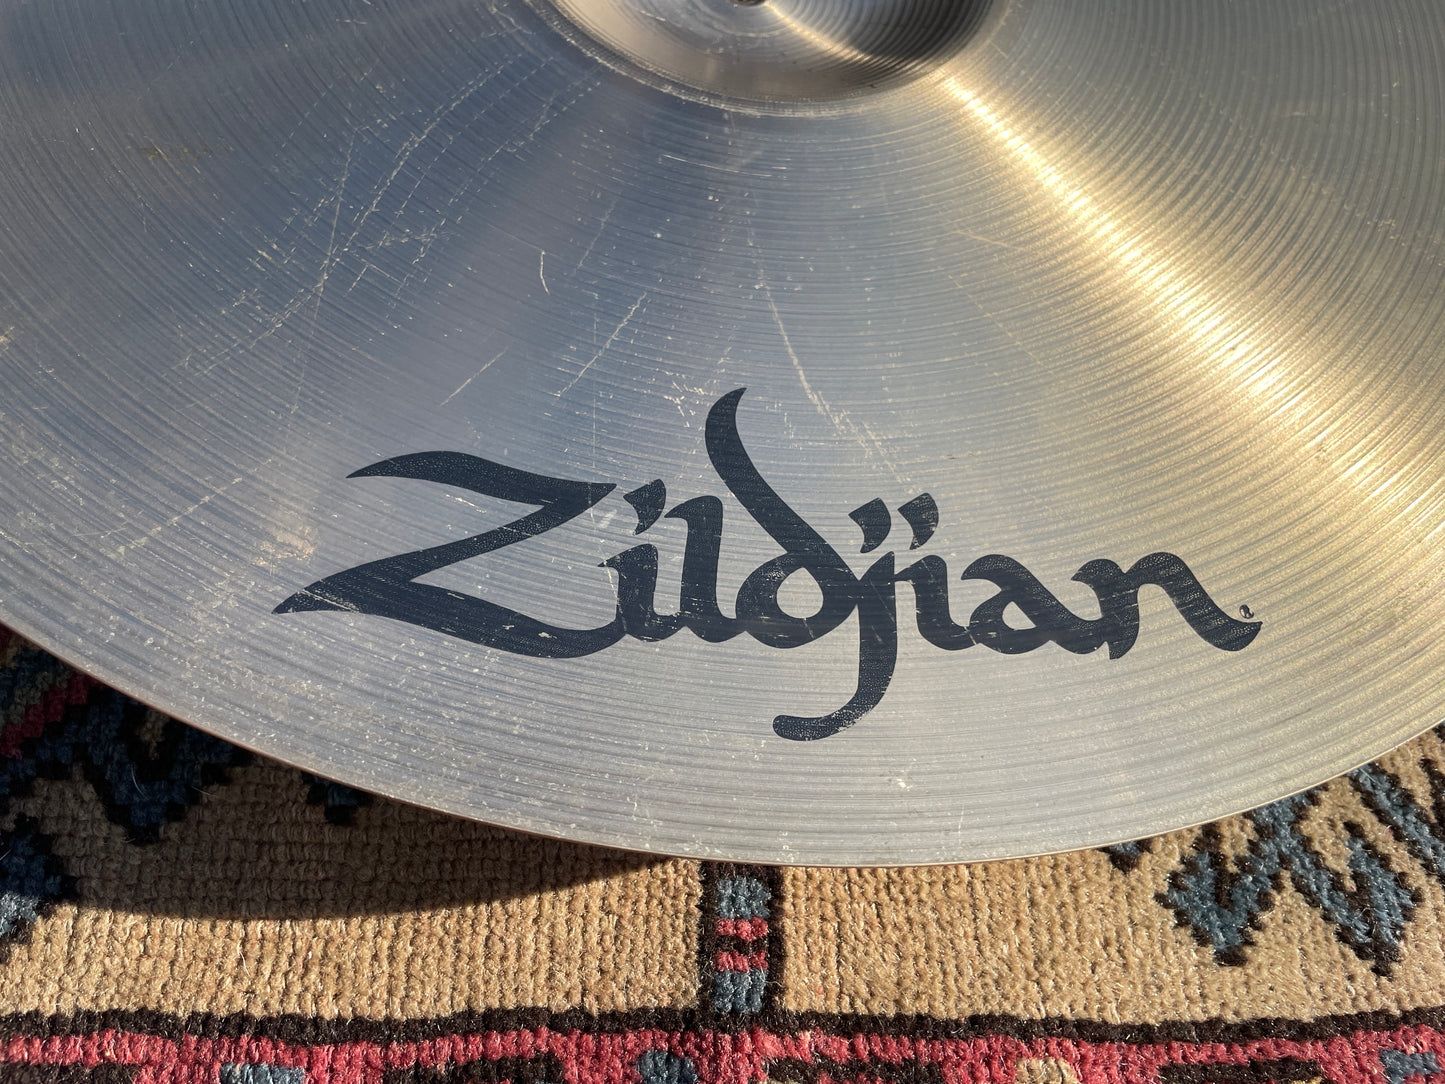 21" Zildjian A Rock Ride Cymbal 3208g